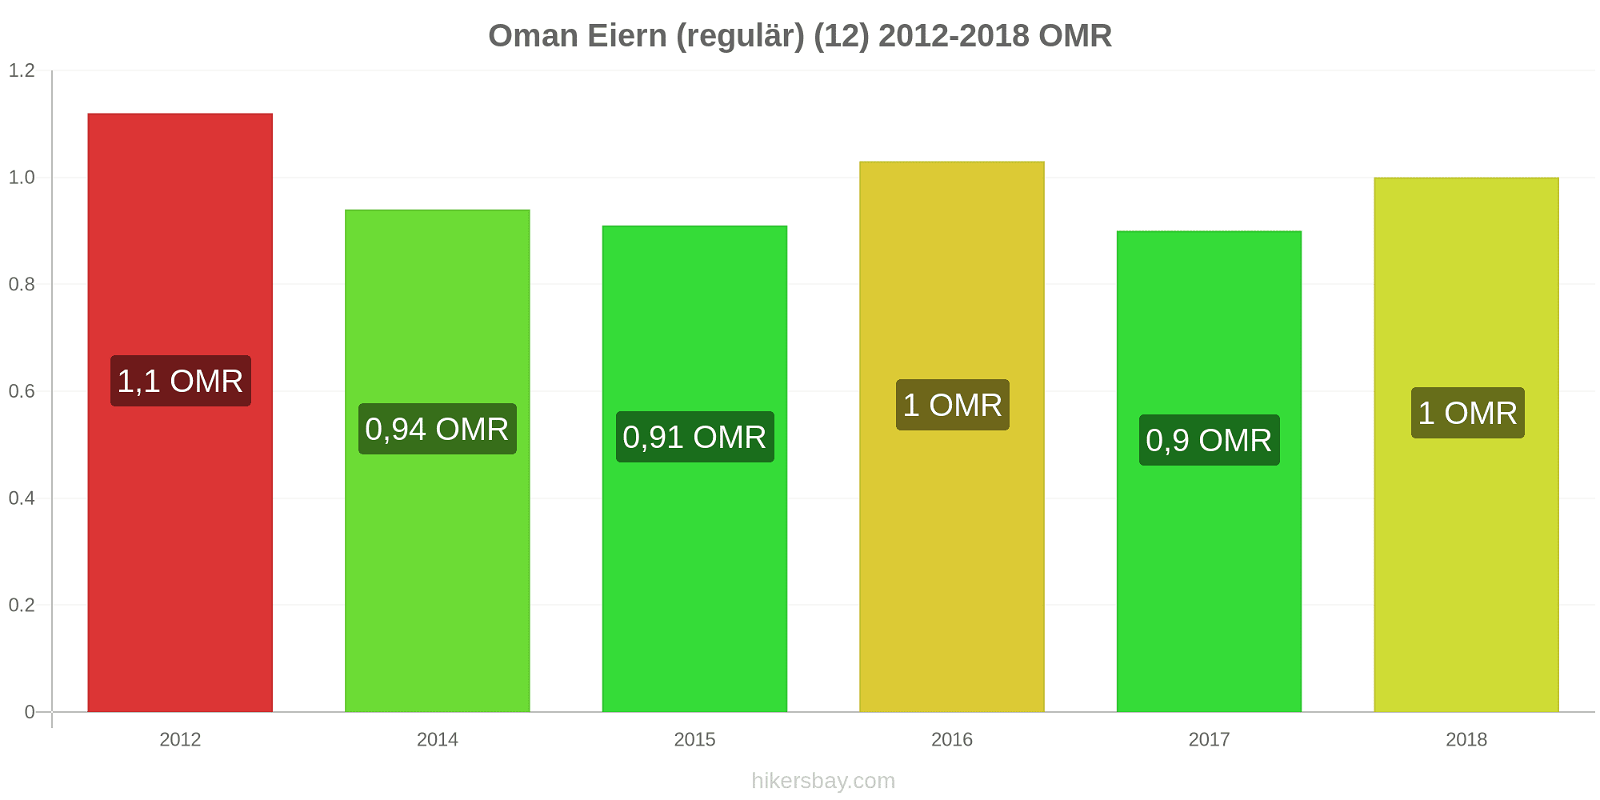 Oman Preisänderungen Eier (regelmäßig) (12) hikersbay.com